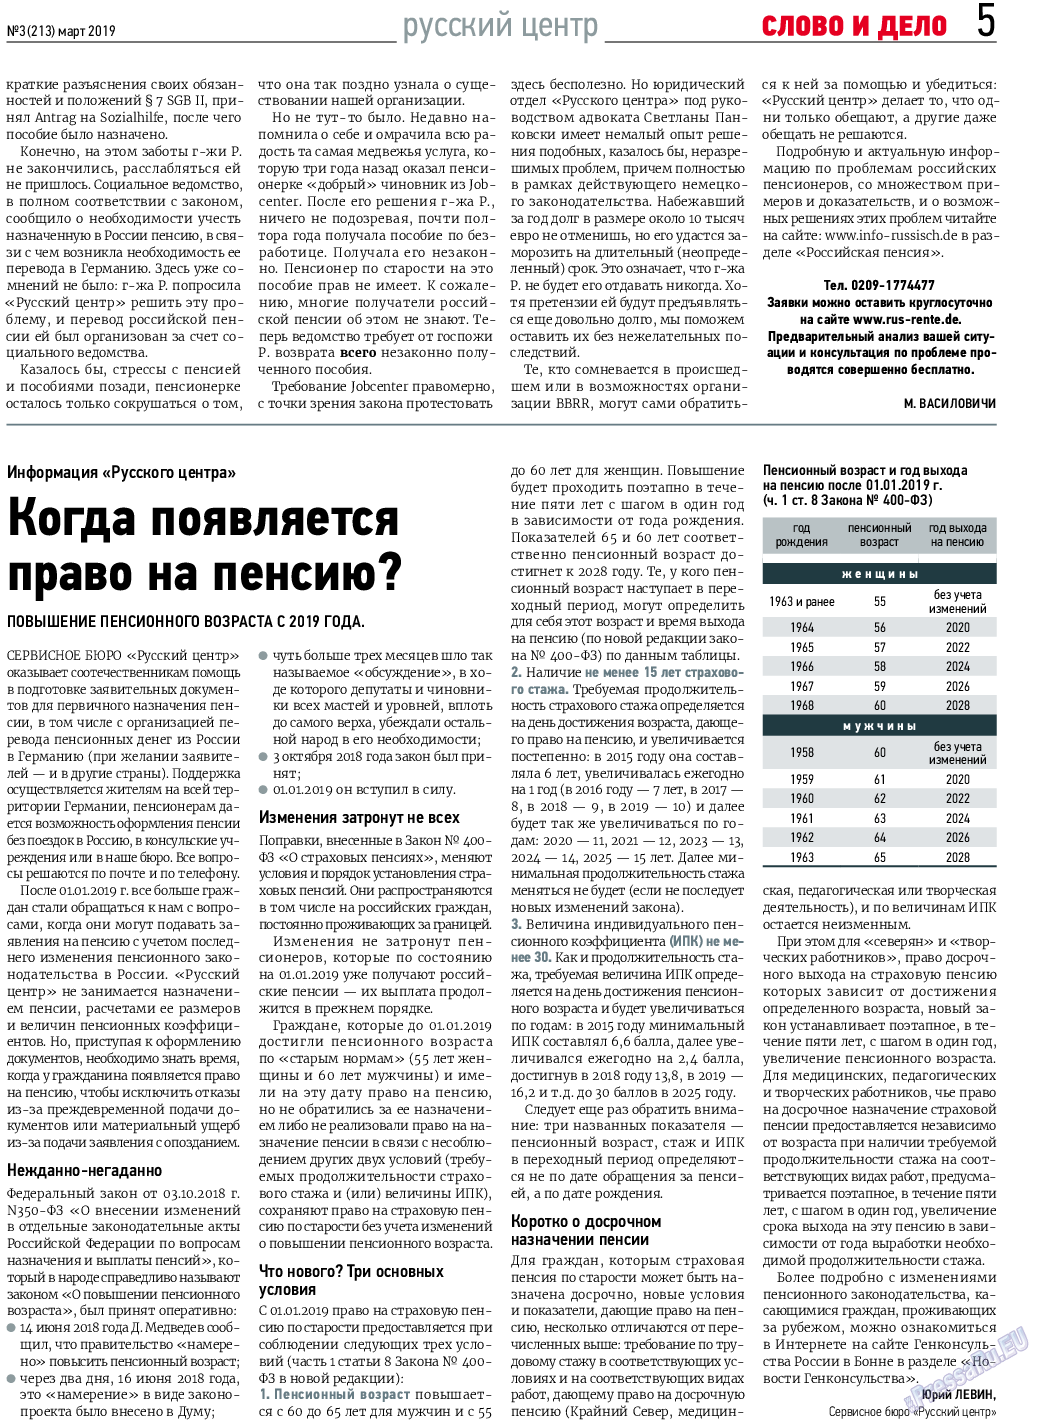 Слово и дело, газета. 2019 №3 стр.5